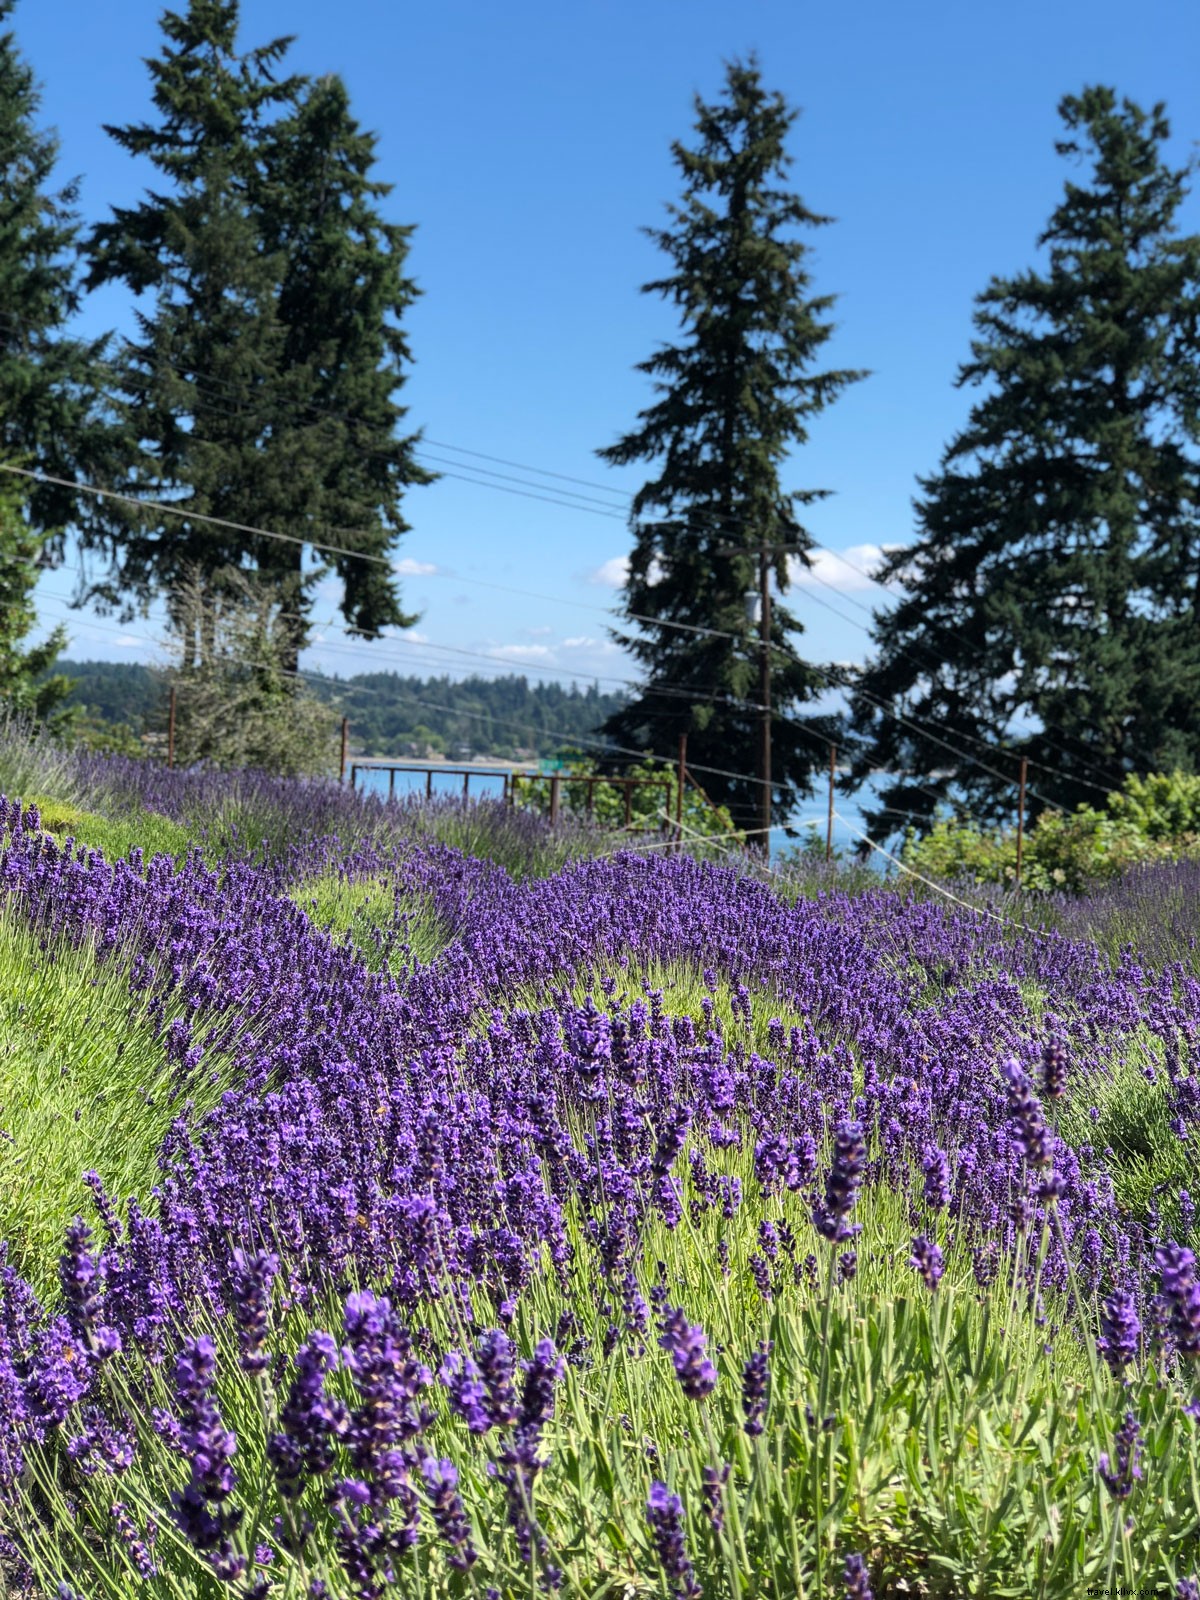 Gita di un giorno a Seattle:prendi il traghetto per immergerti nella magia dell isola di Vashon 